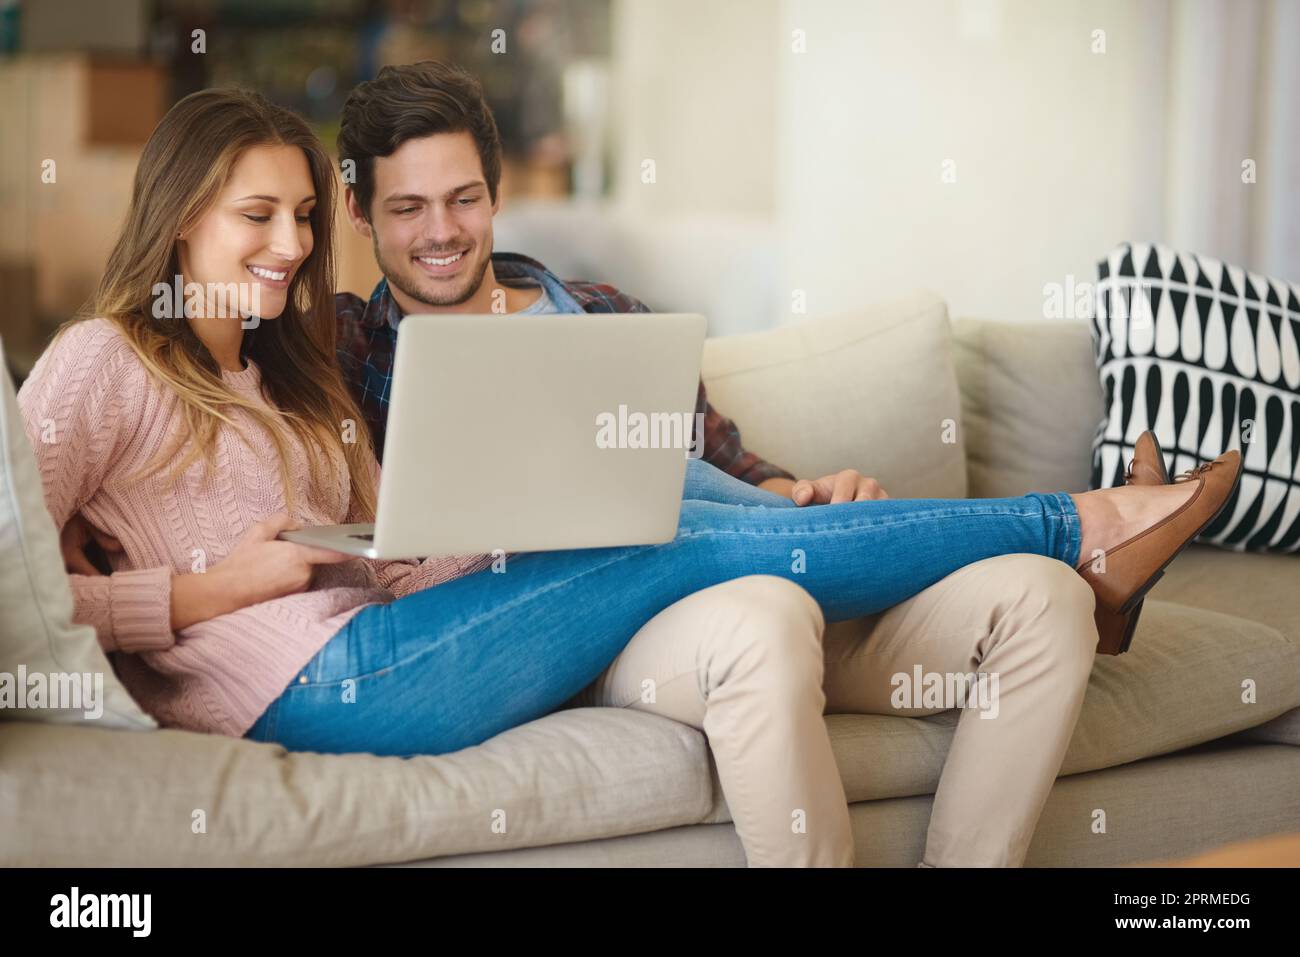 Un lavoro leggero con il budget mensile. Una giovane coppia felice che usa un computer portatile insieme mentre si rilassa sul divano di casa. Foto Stock